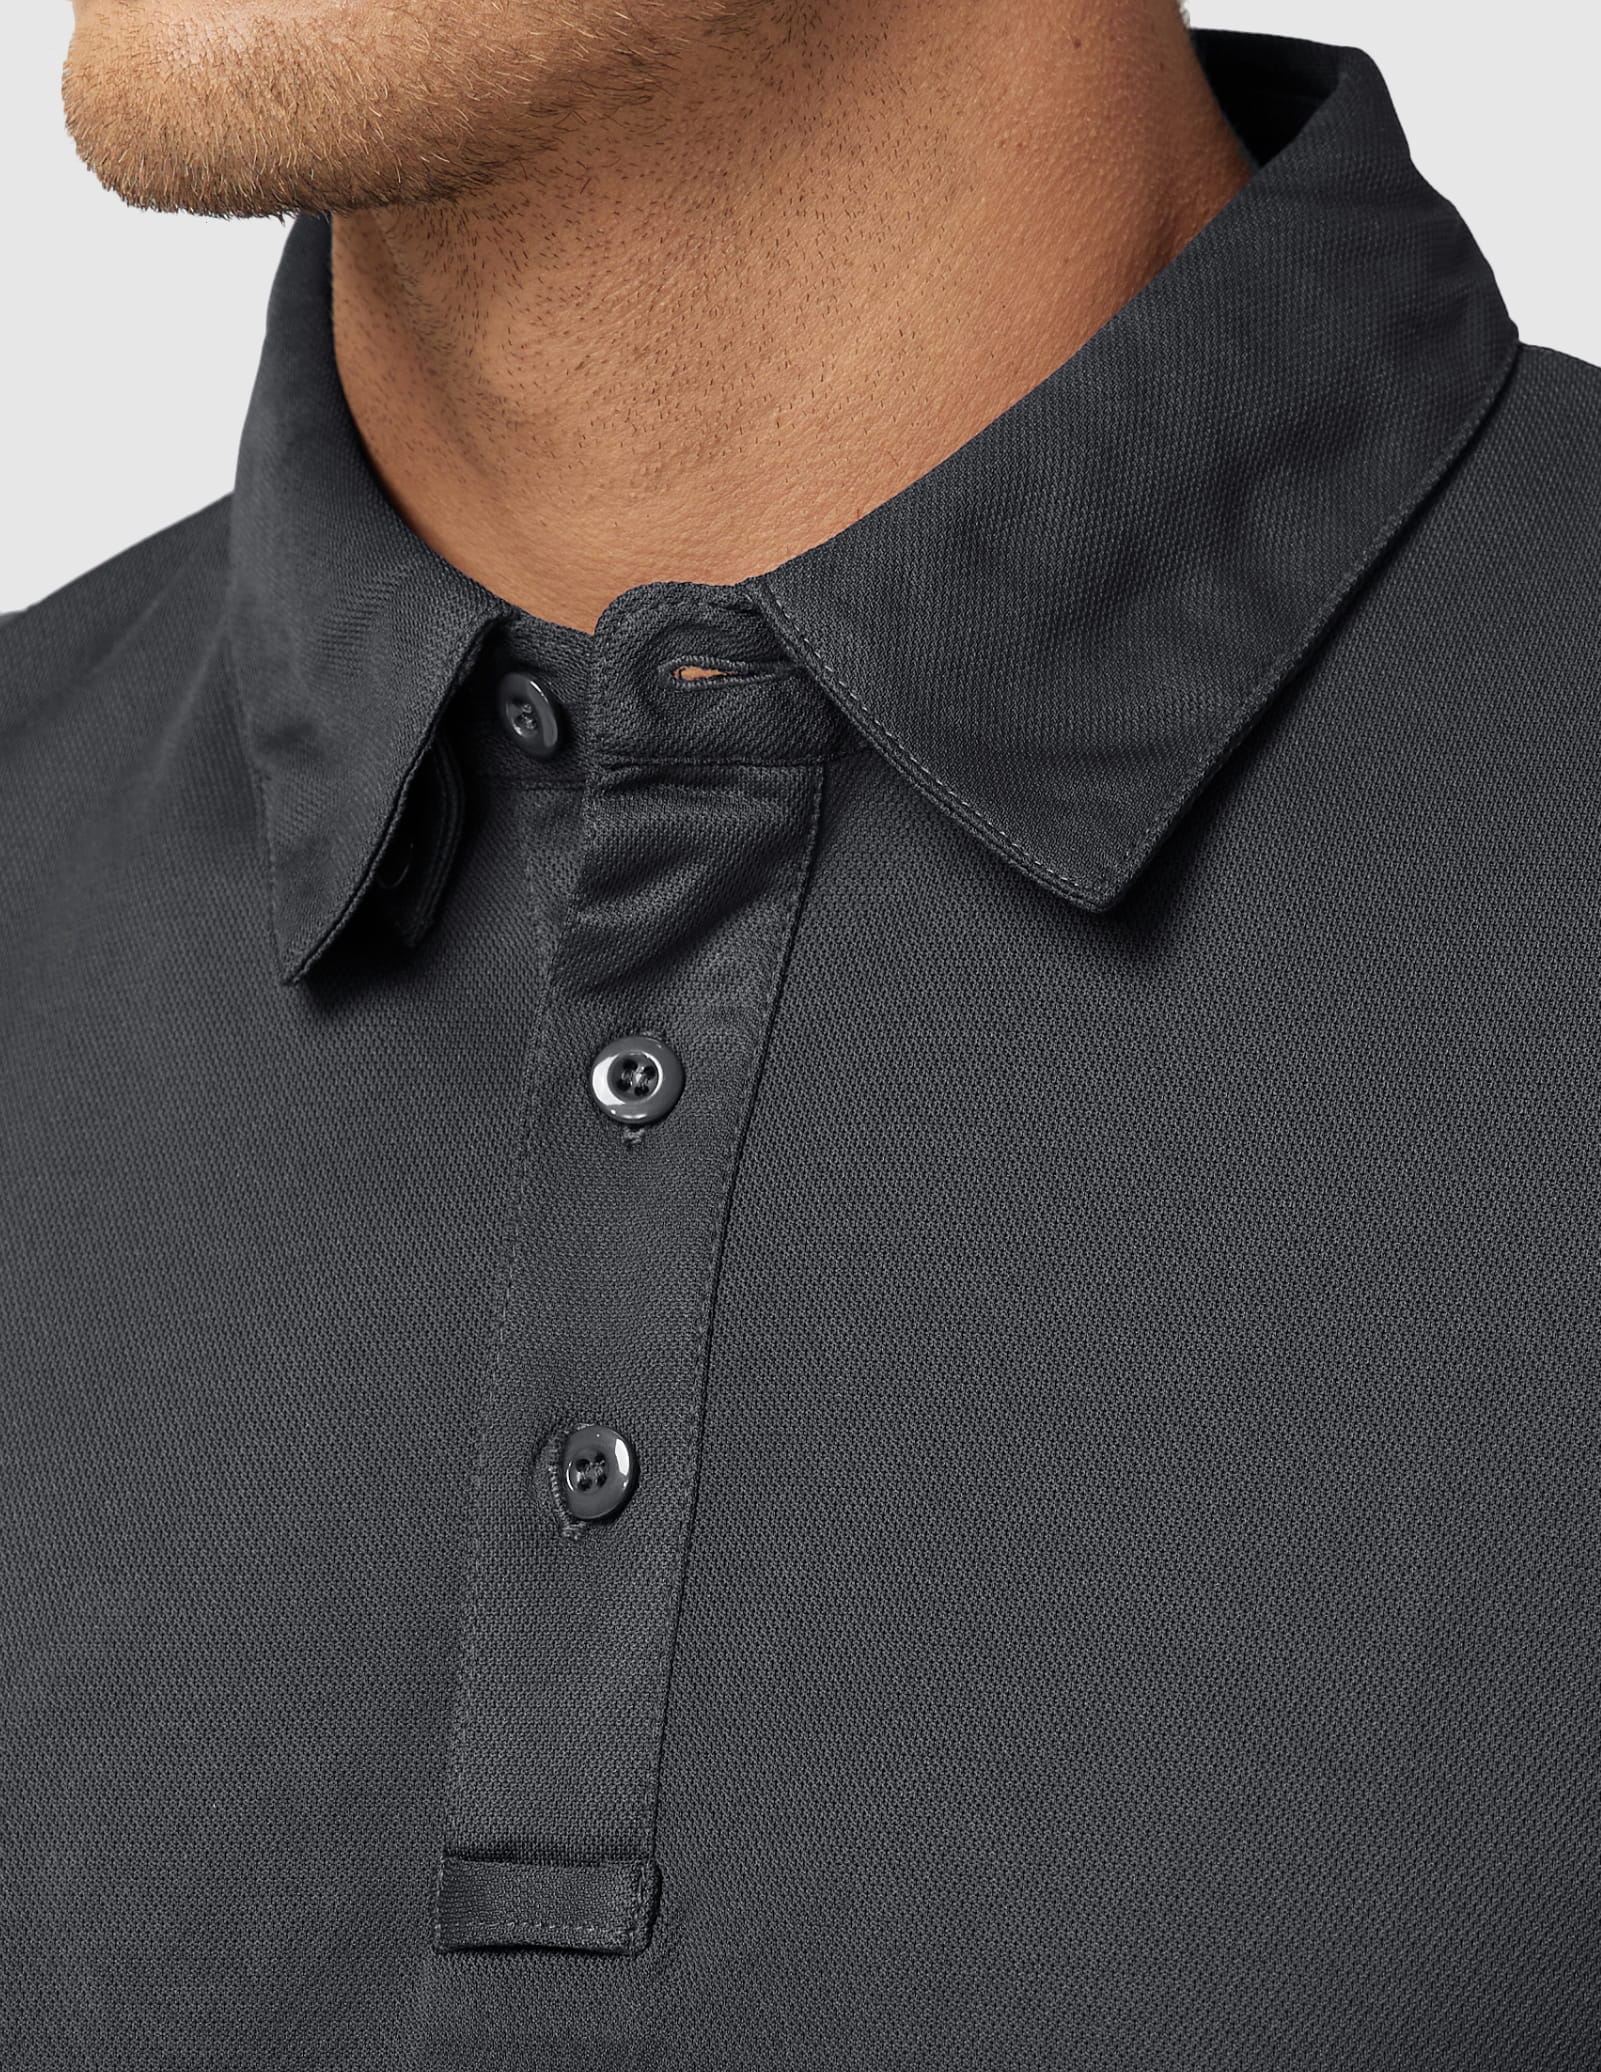 Men's Tactical Polo Shirts Outdoor Performance Collared Shirt Men Polo MIER